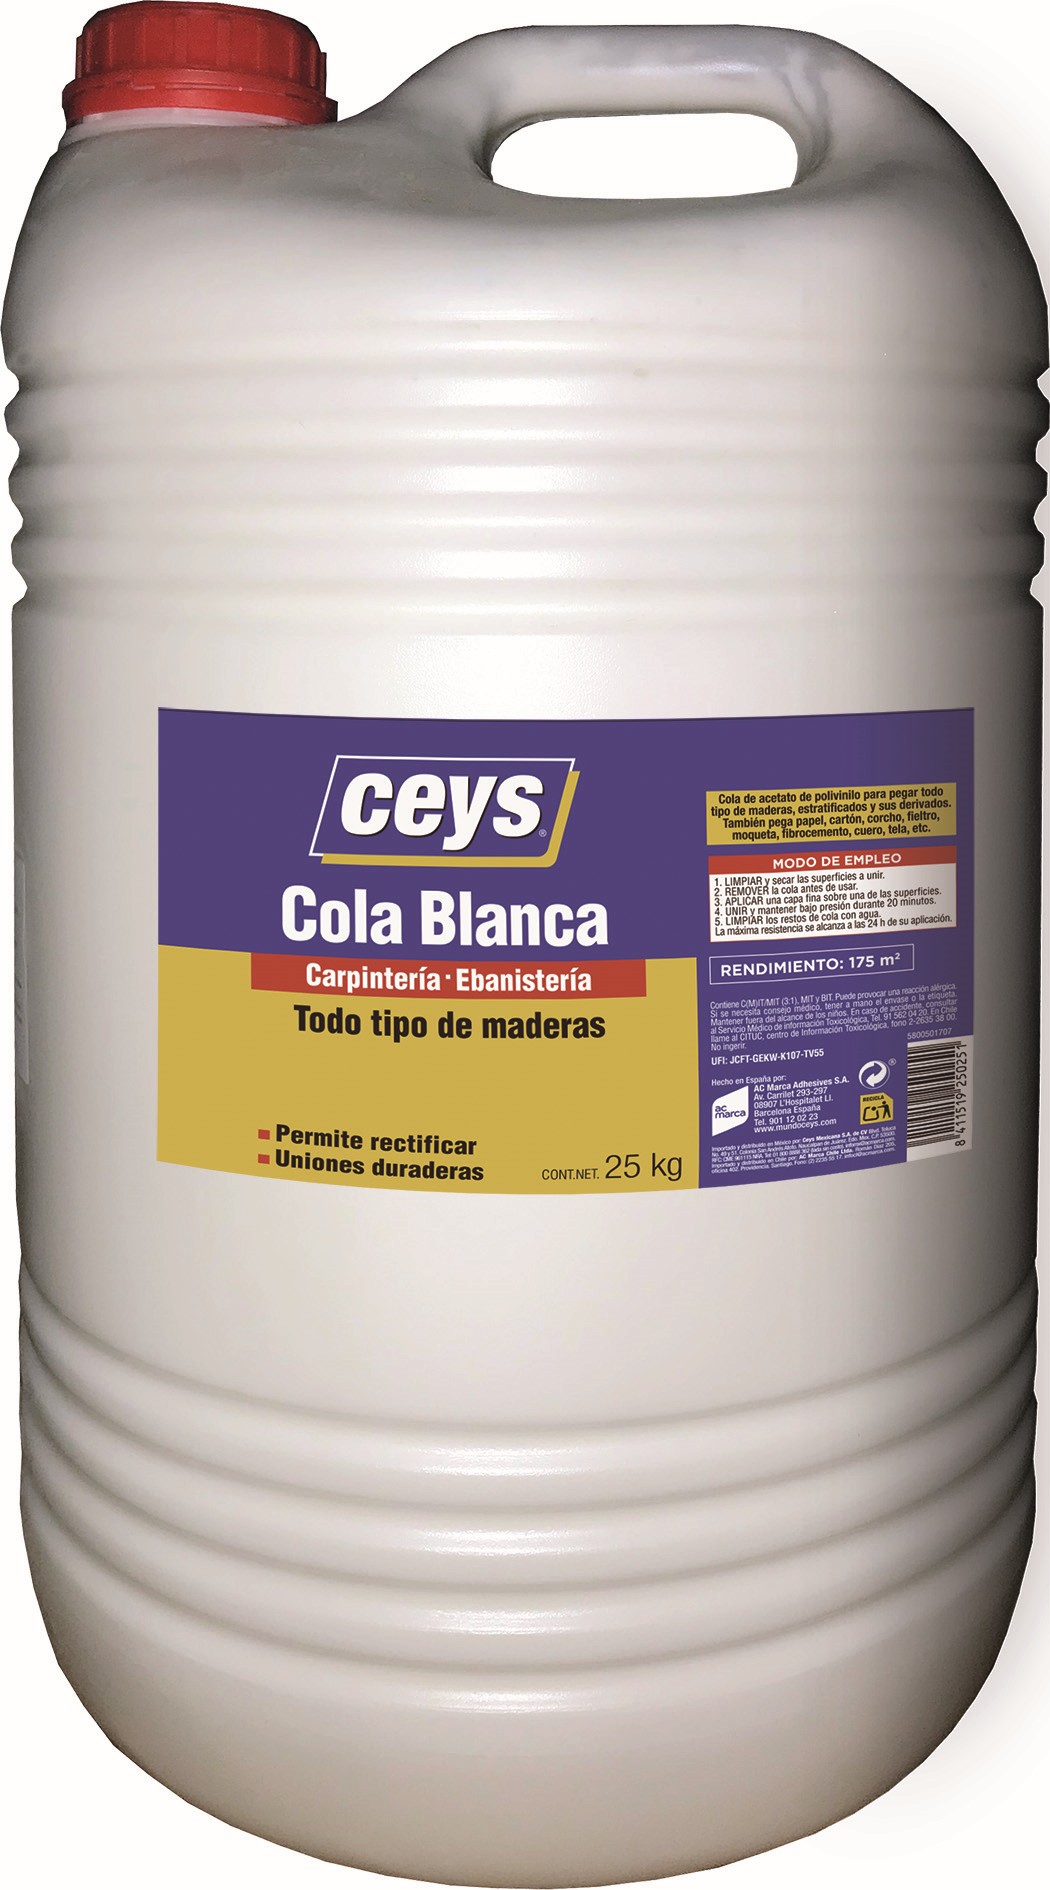 Ceys - Cola blanca para madera - Ideal para trabajos de